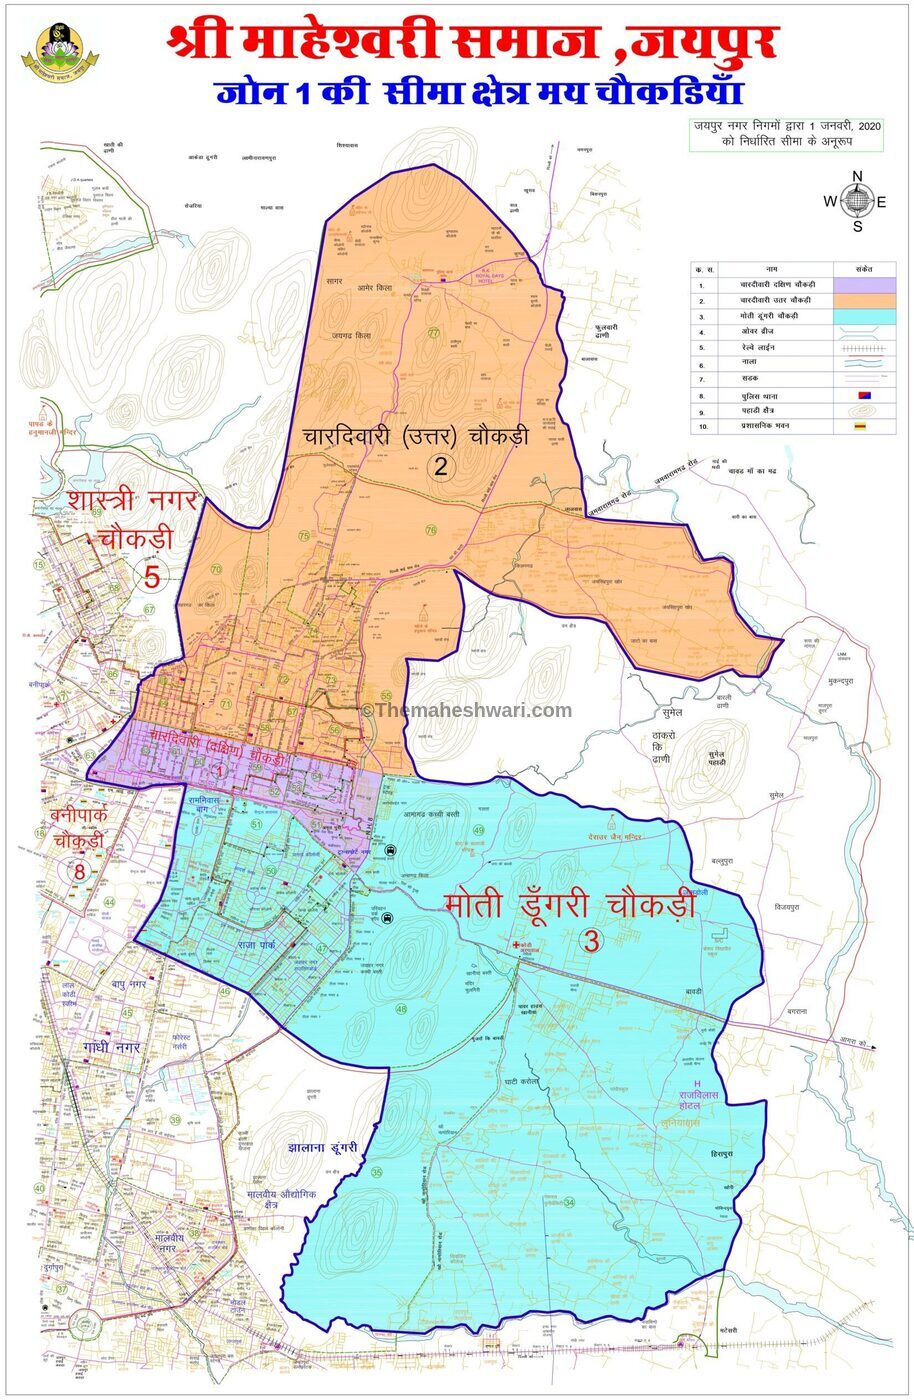 Maheshwari samaj Jaipur, Zone 1